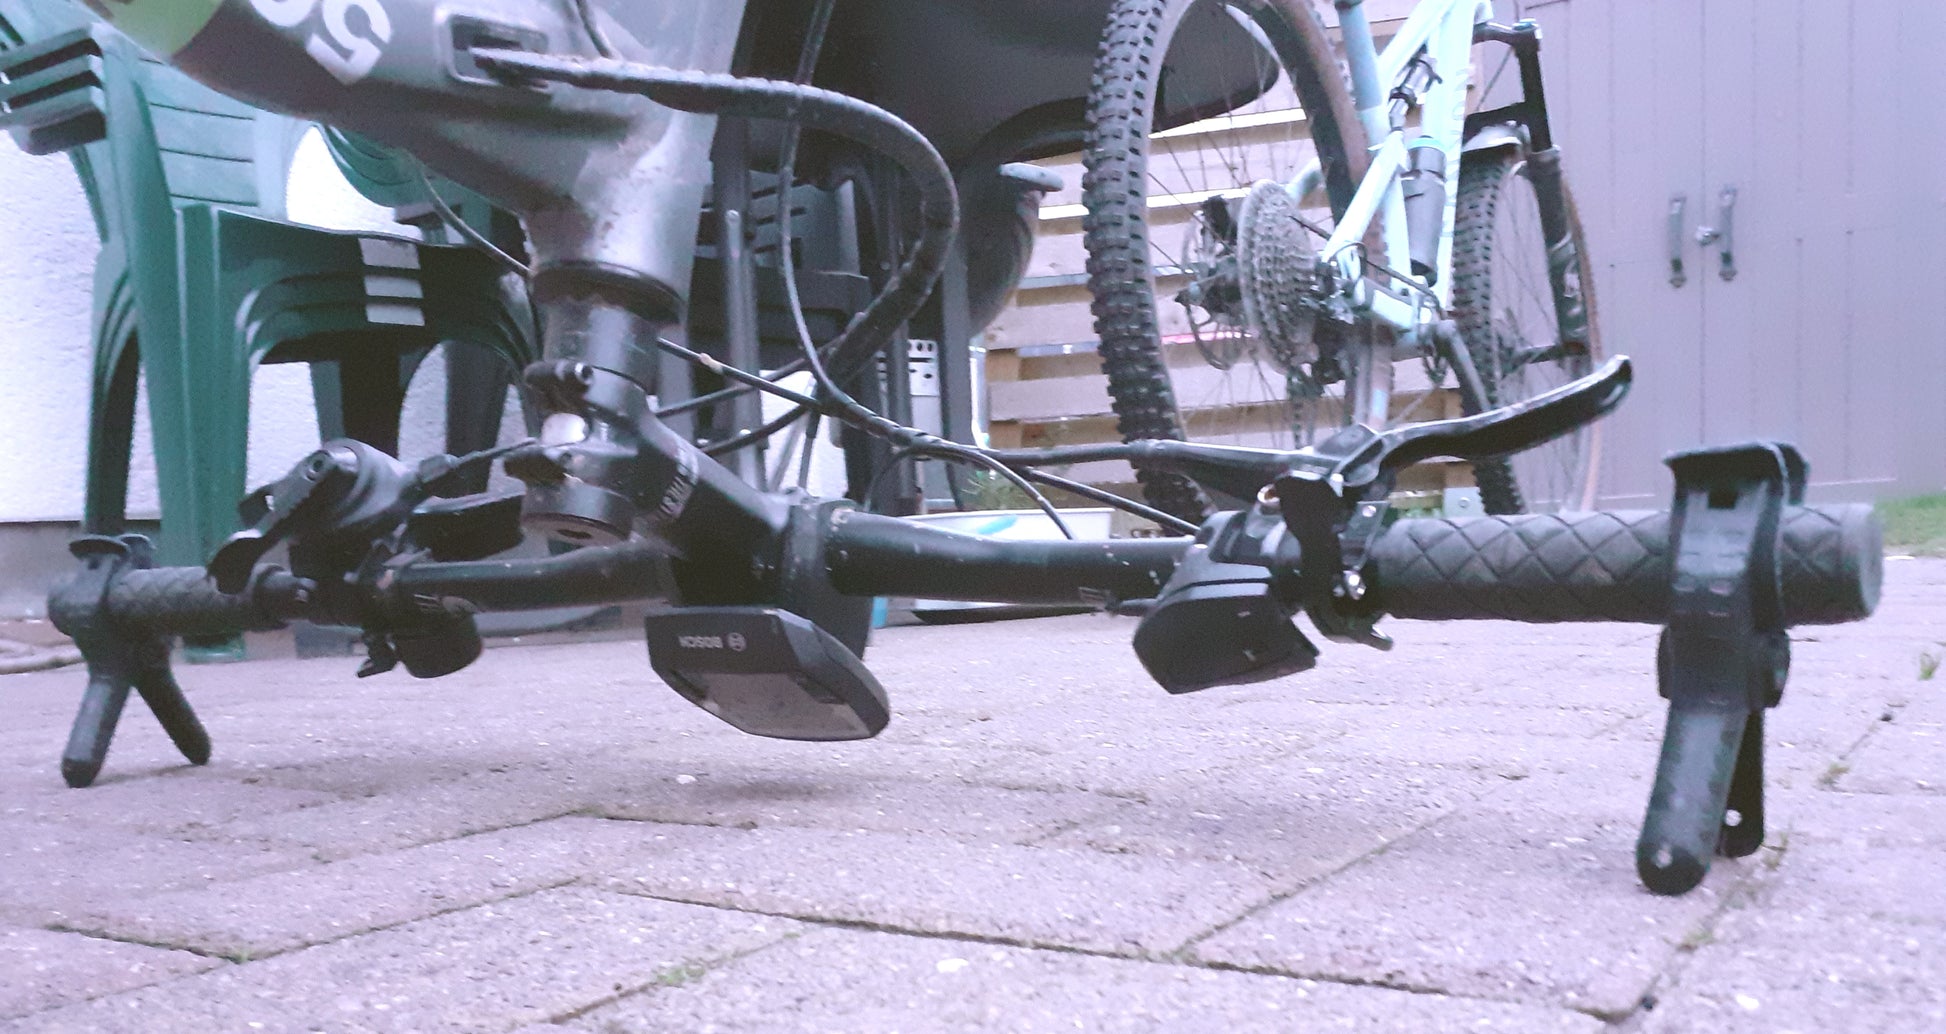 Fahrradreparatur leicht gemacht: Tragbarer Bike Jack für schnelle Reparaturen unterwegs! - Complement Fusion